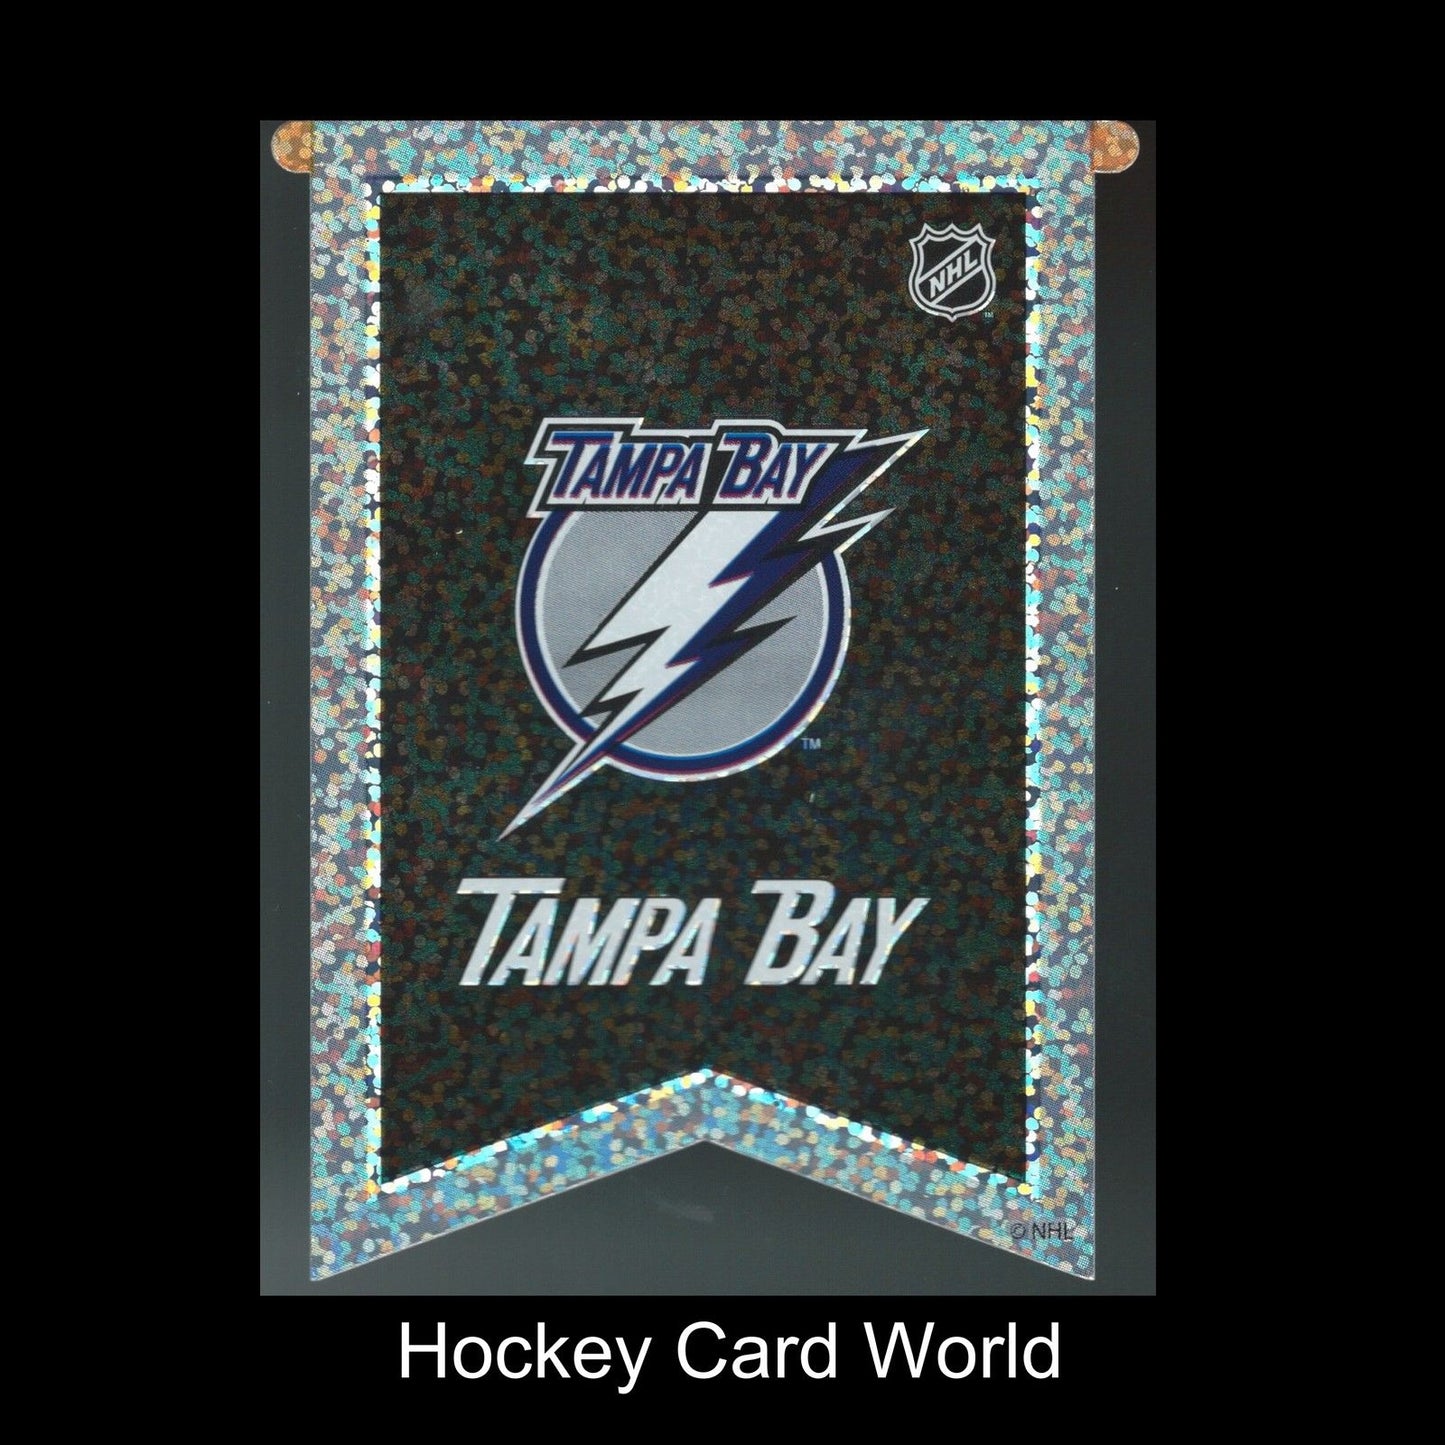  Tampa Bay Lightning 3"x4" NHL Licensed Banner Sparkle Decal Sticker Image 1